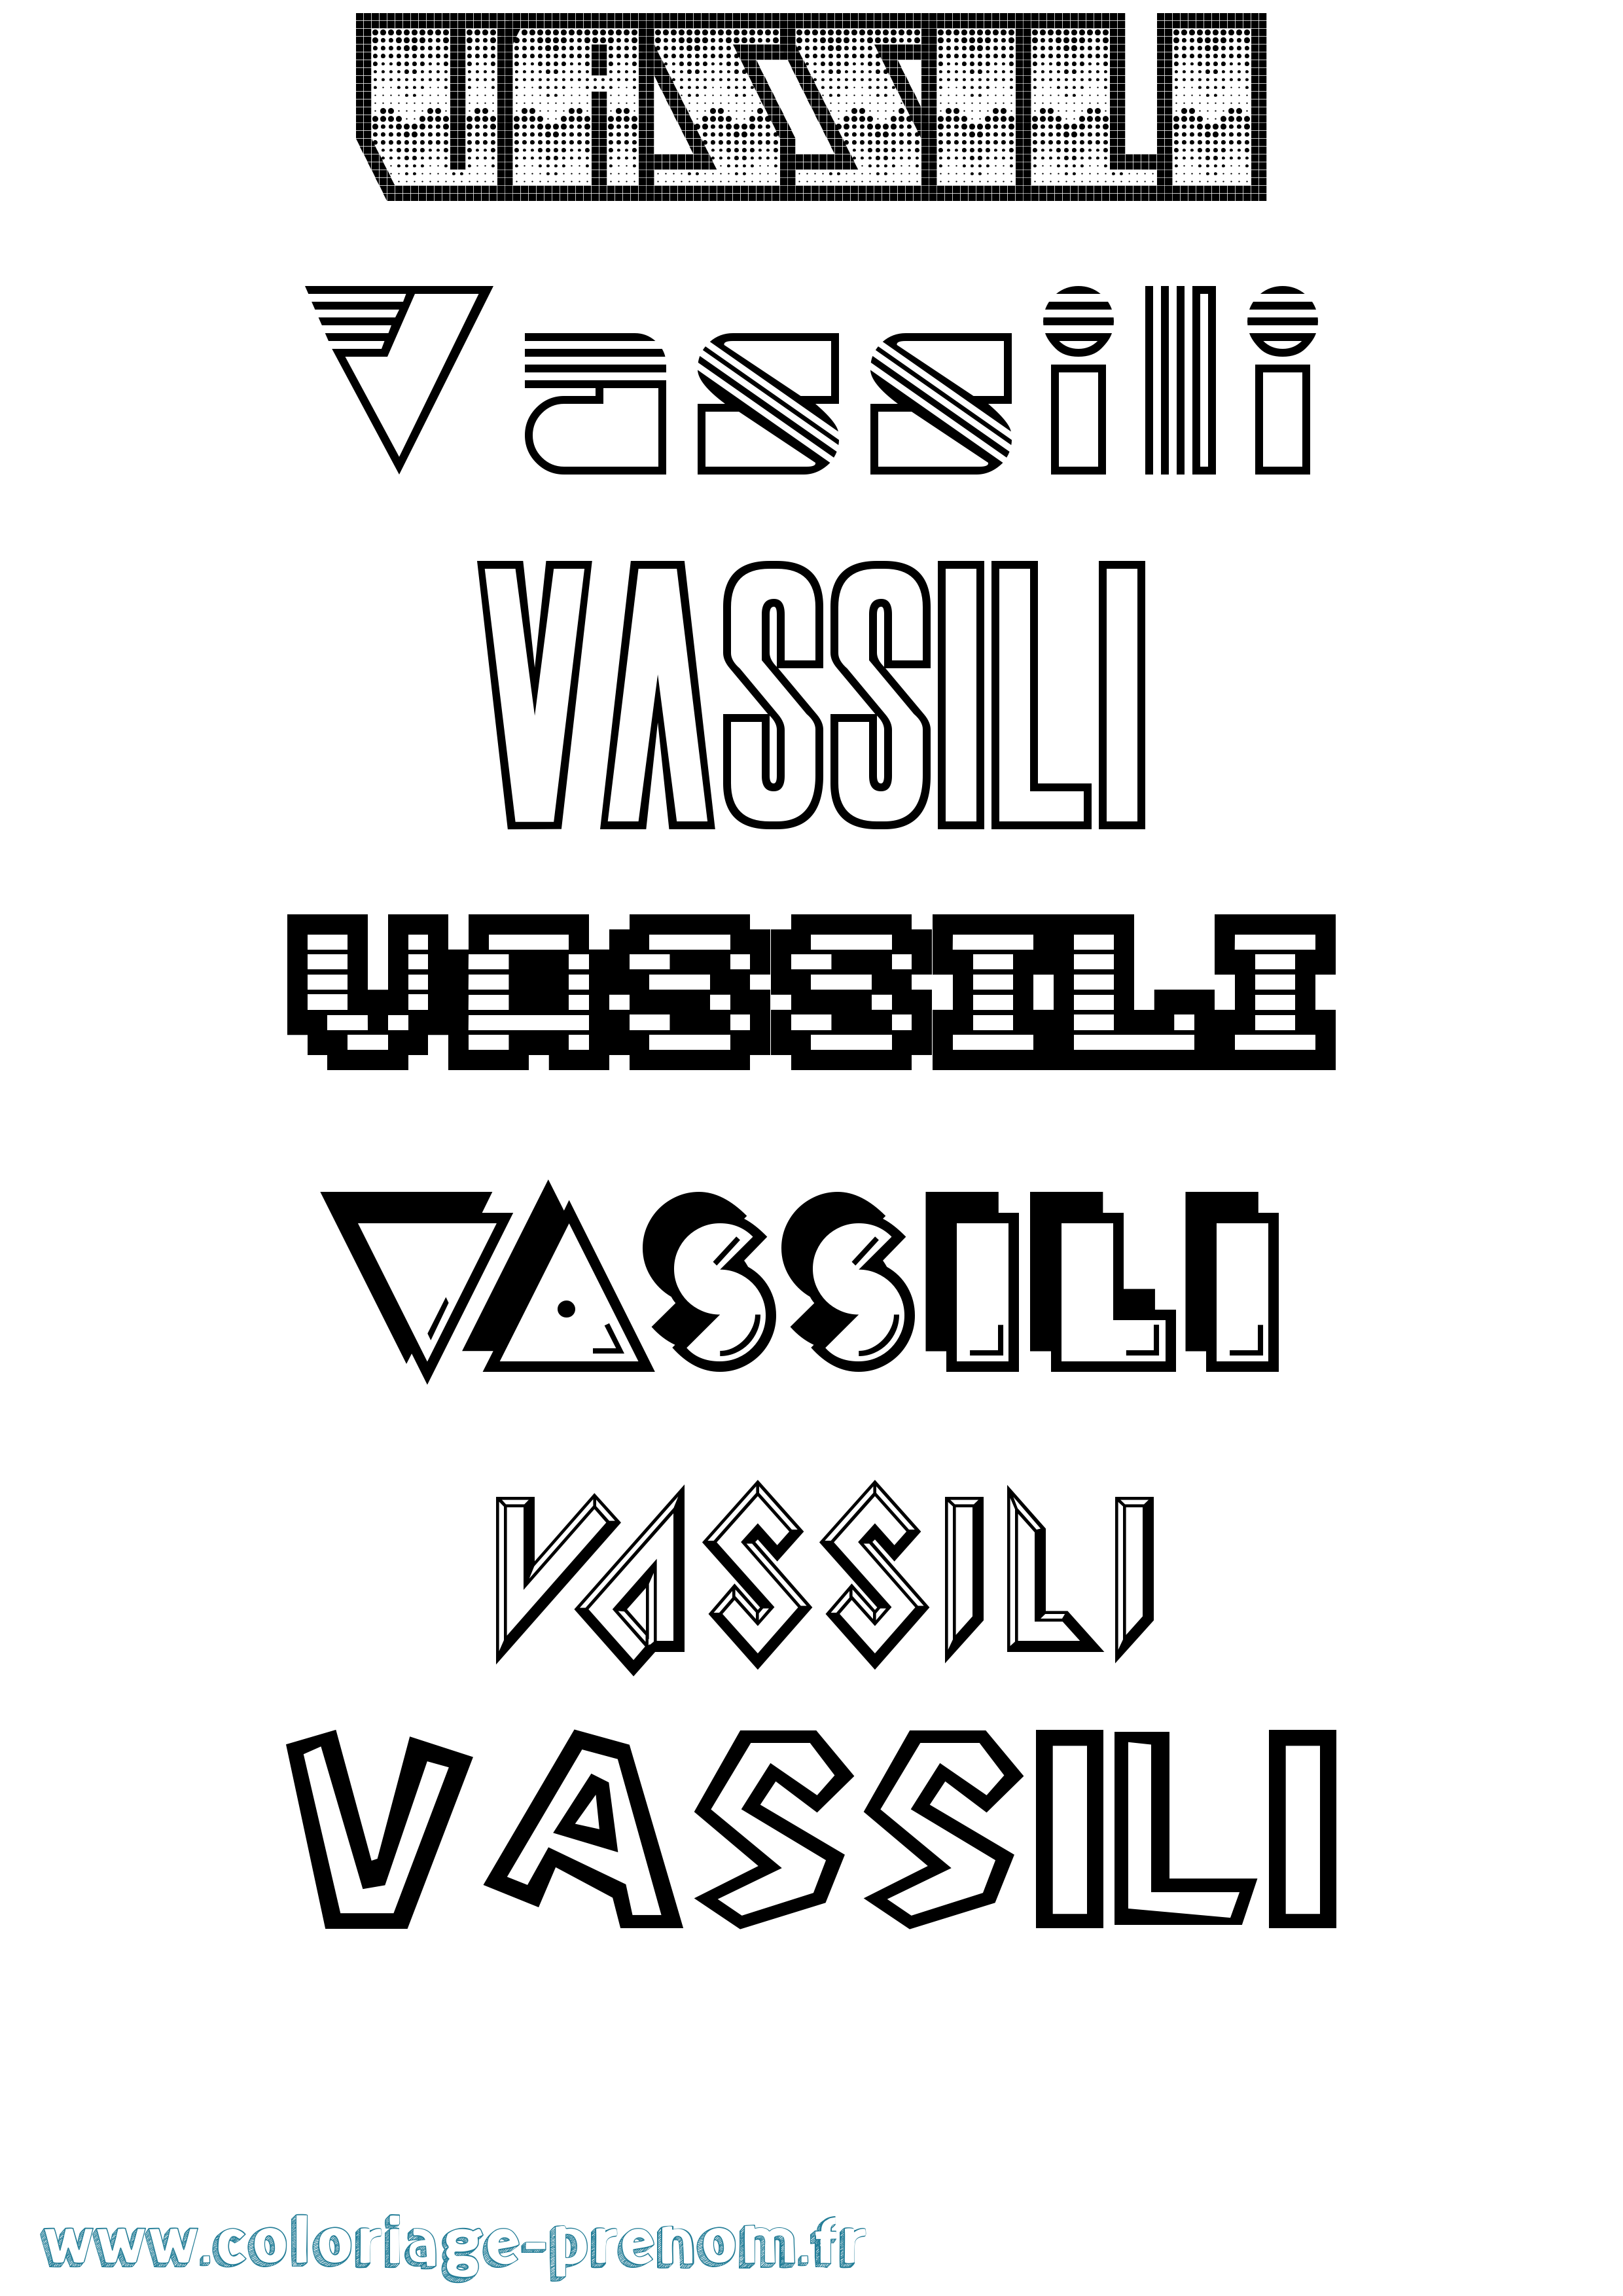 Coloriage prénom Vassili Jeux Vidéos